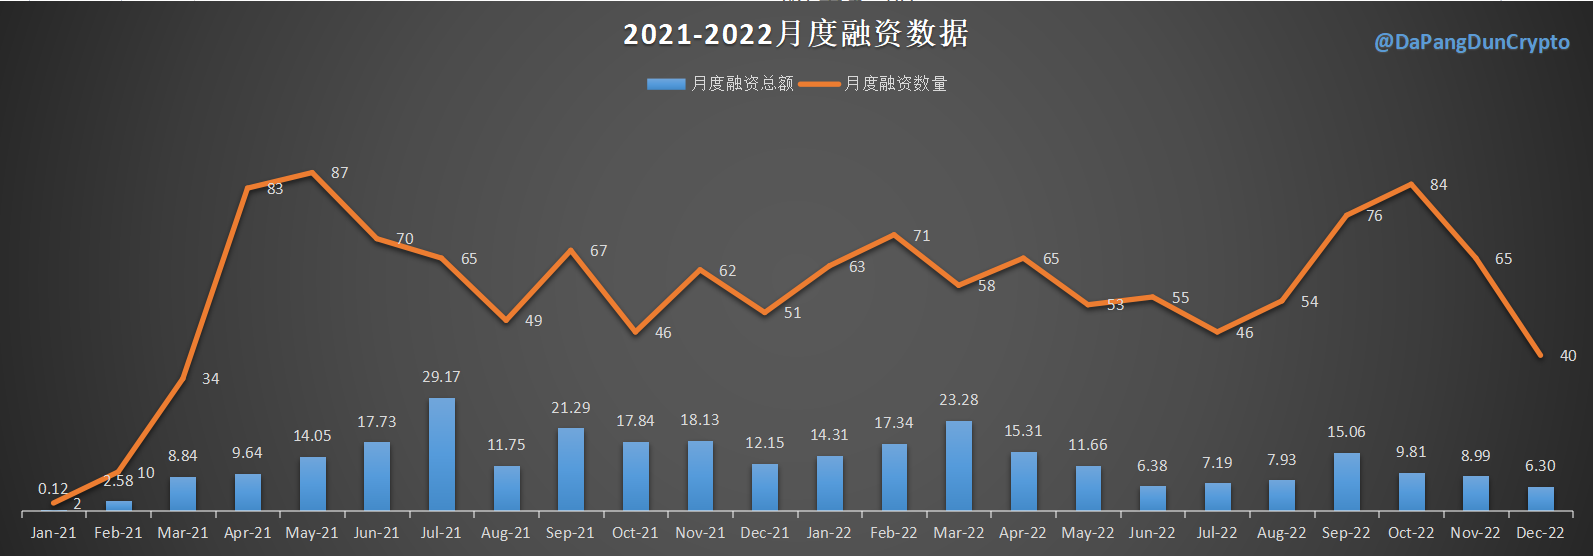 2021-2022月度融资数据